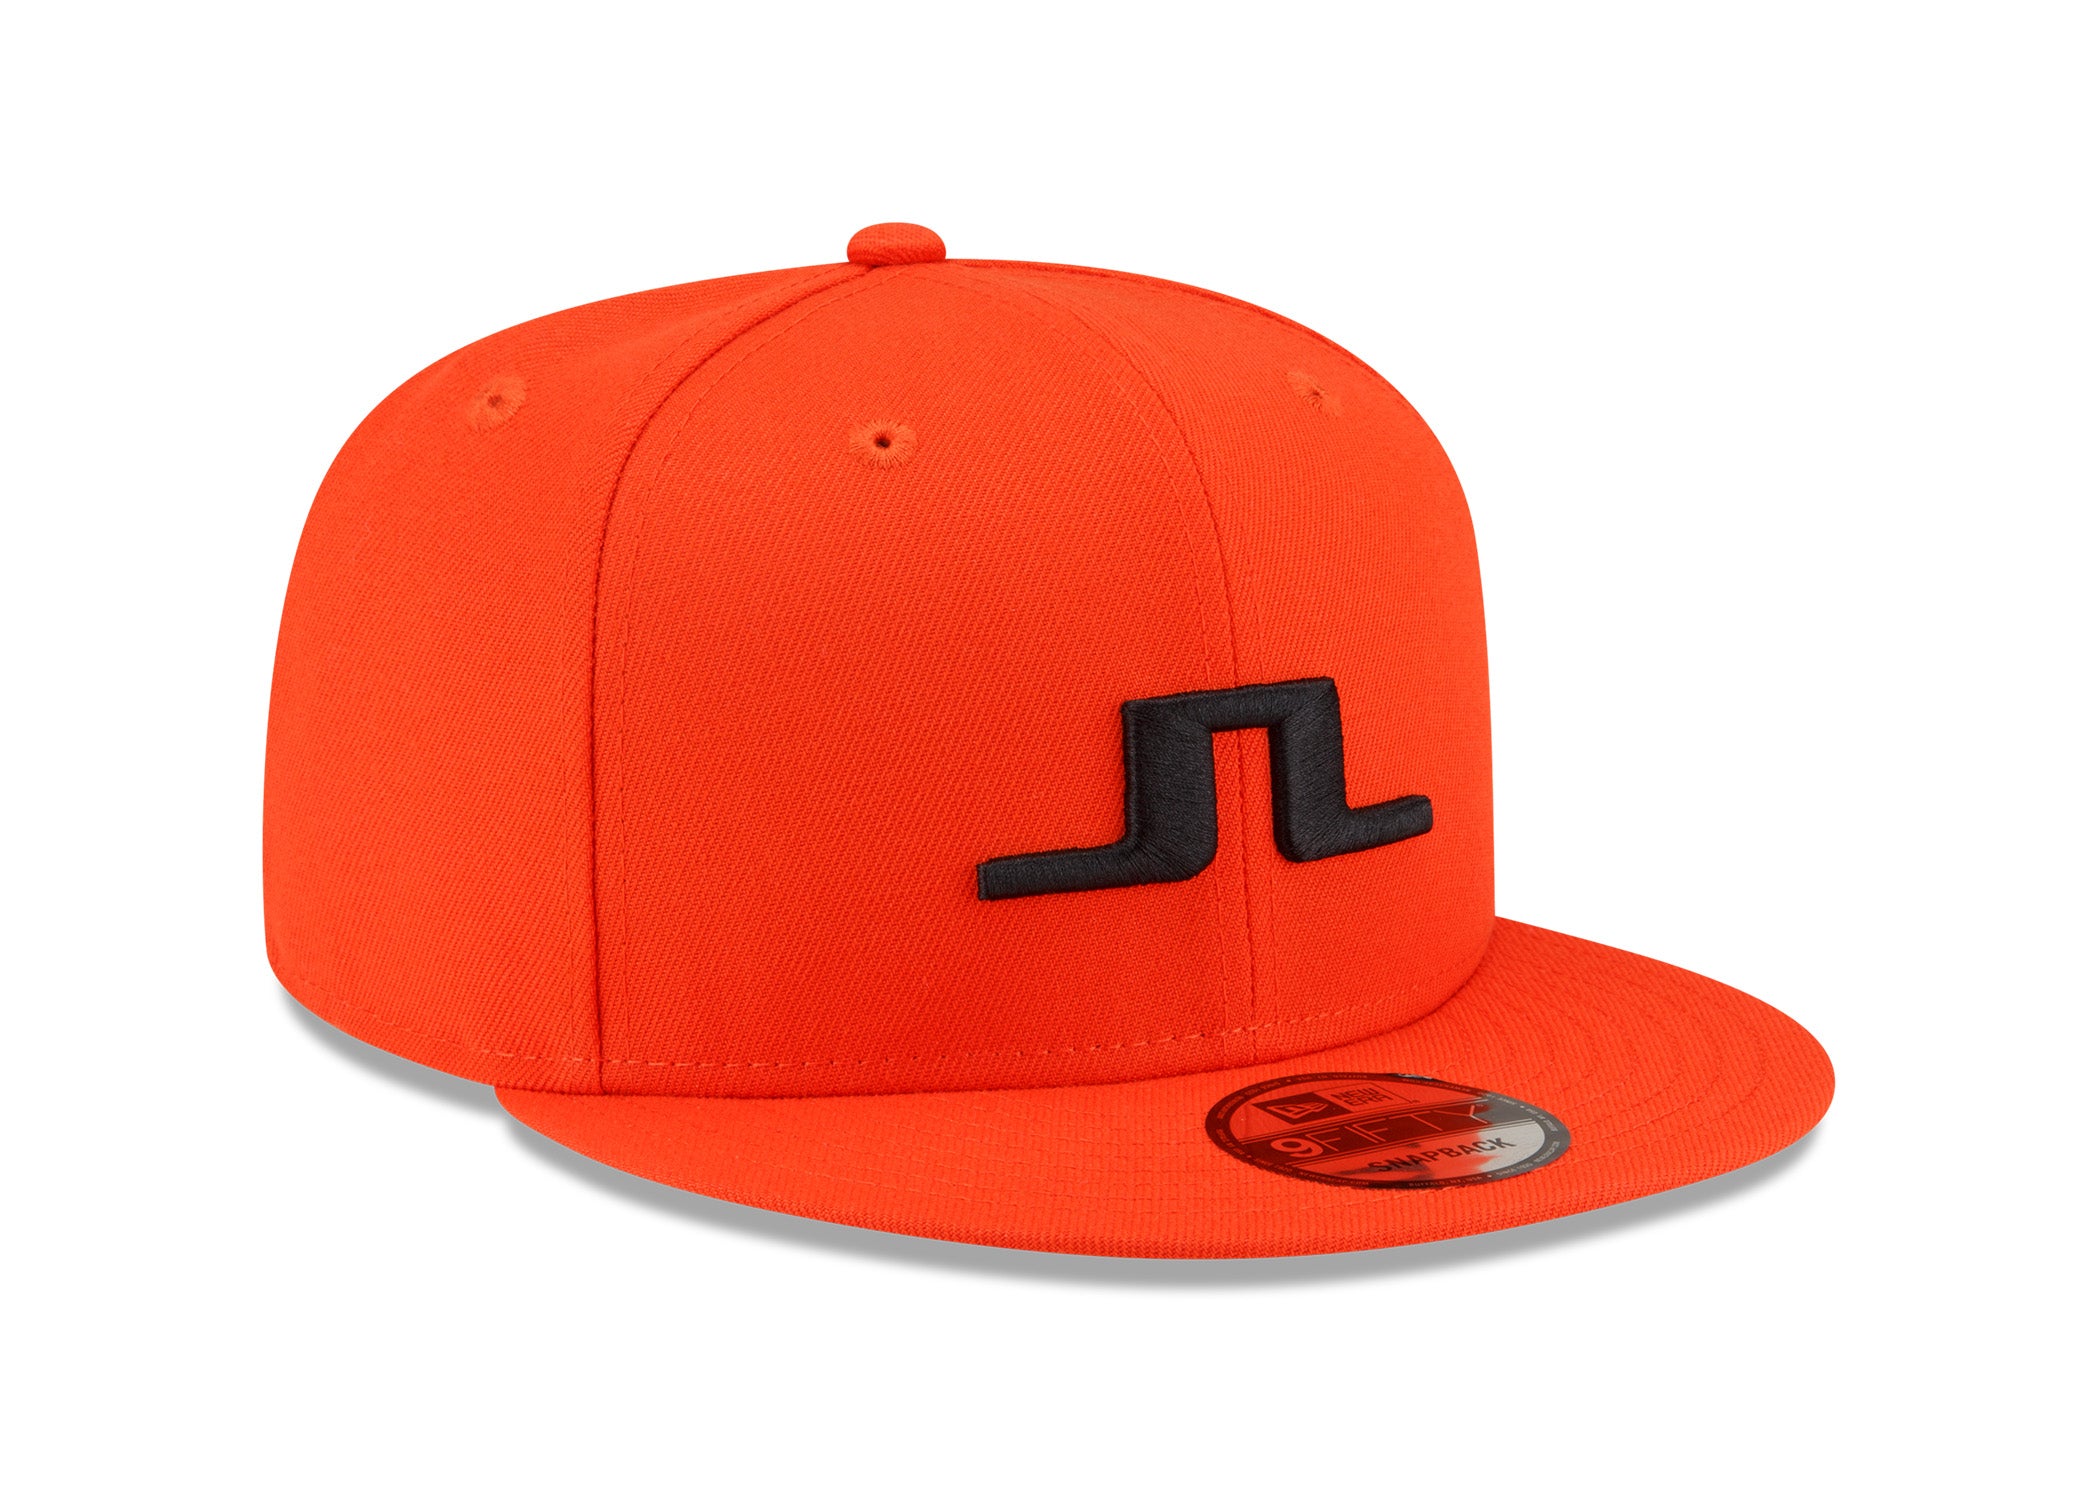 JL x New Era 9FIFTY Orange